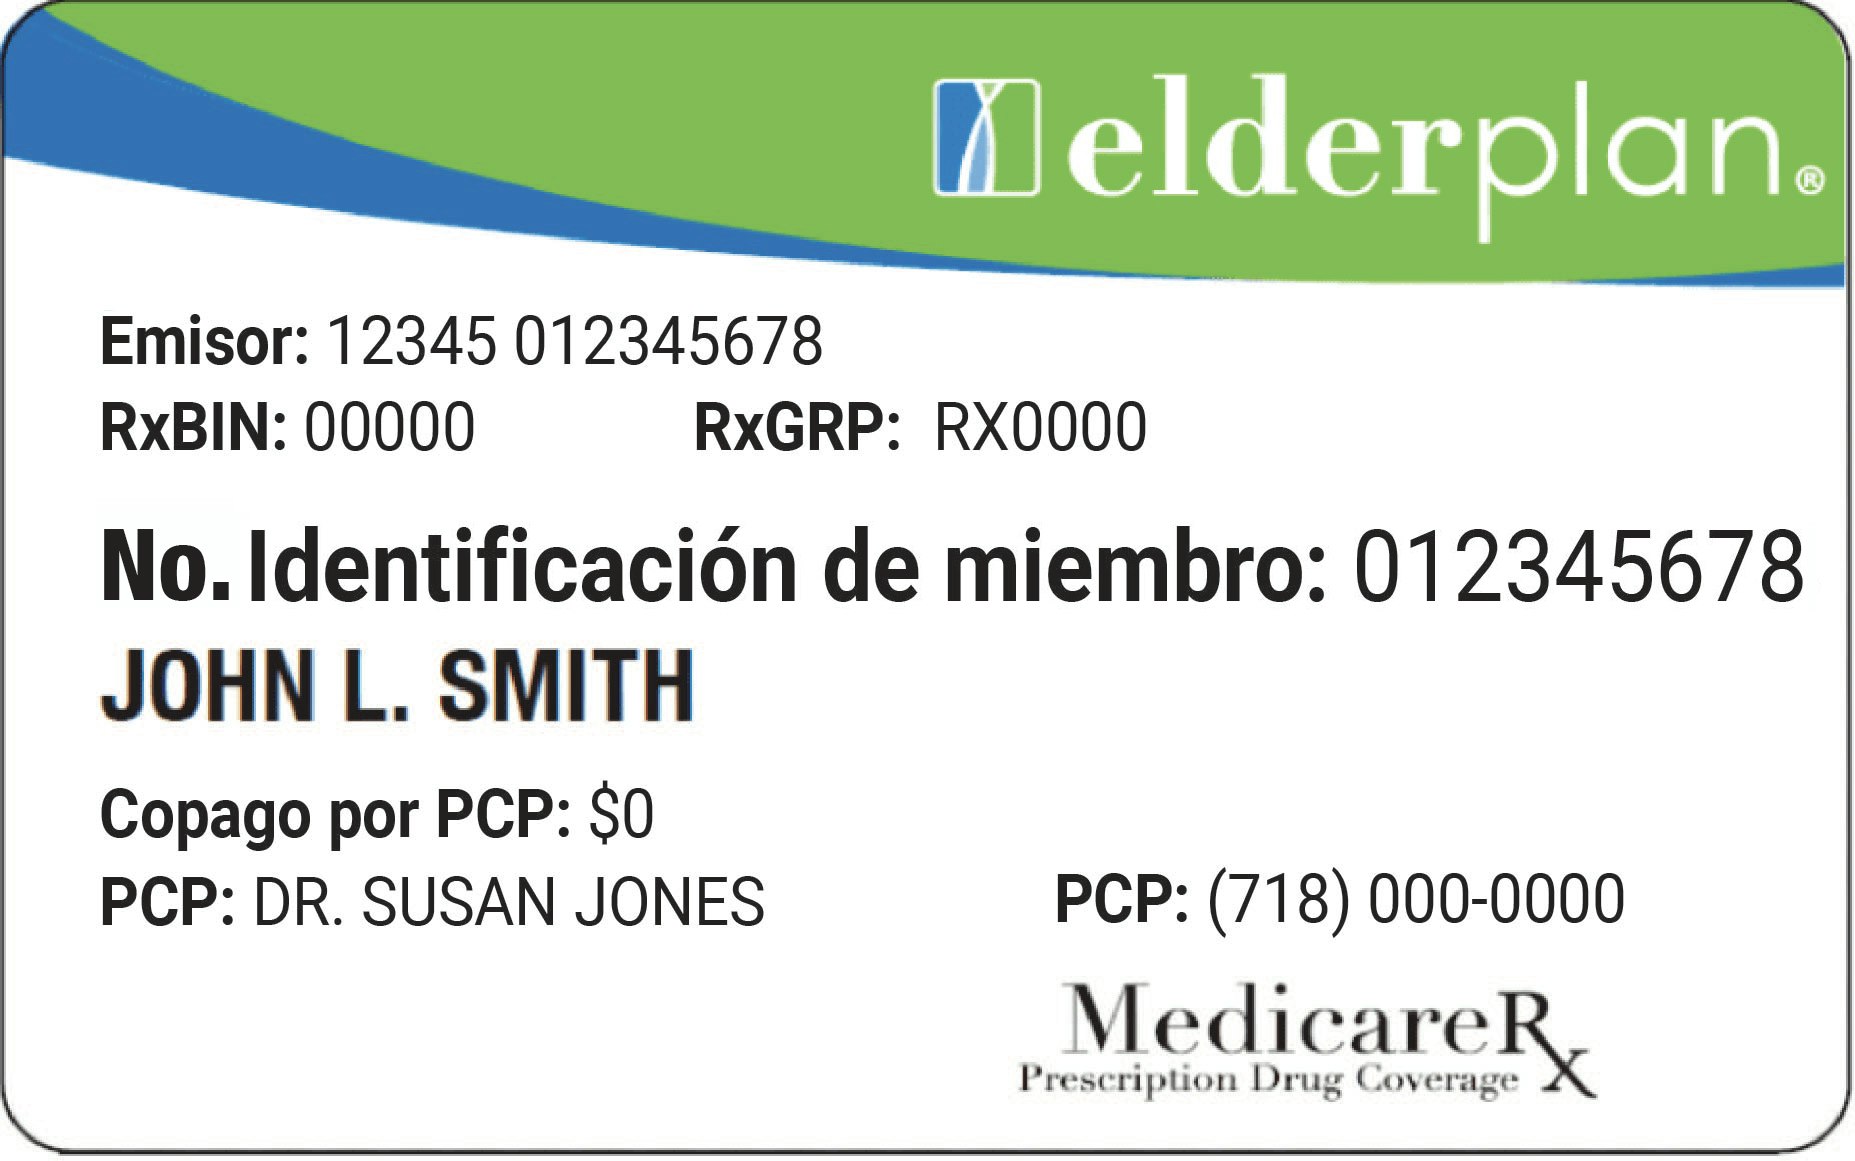 Imagen de la tarjeta de beneficios de Elderplan con ejemplo de n.º de identificación y nombre del participante